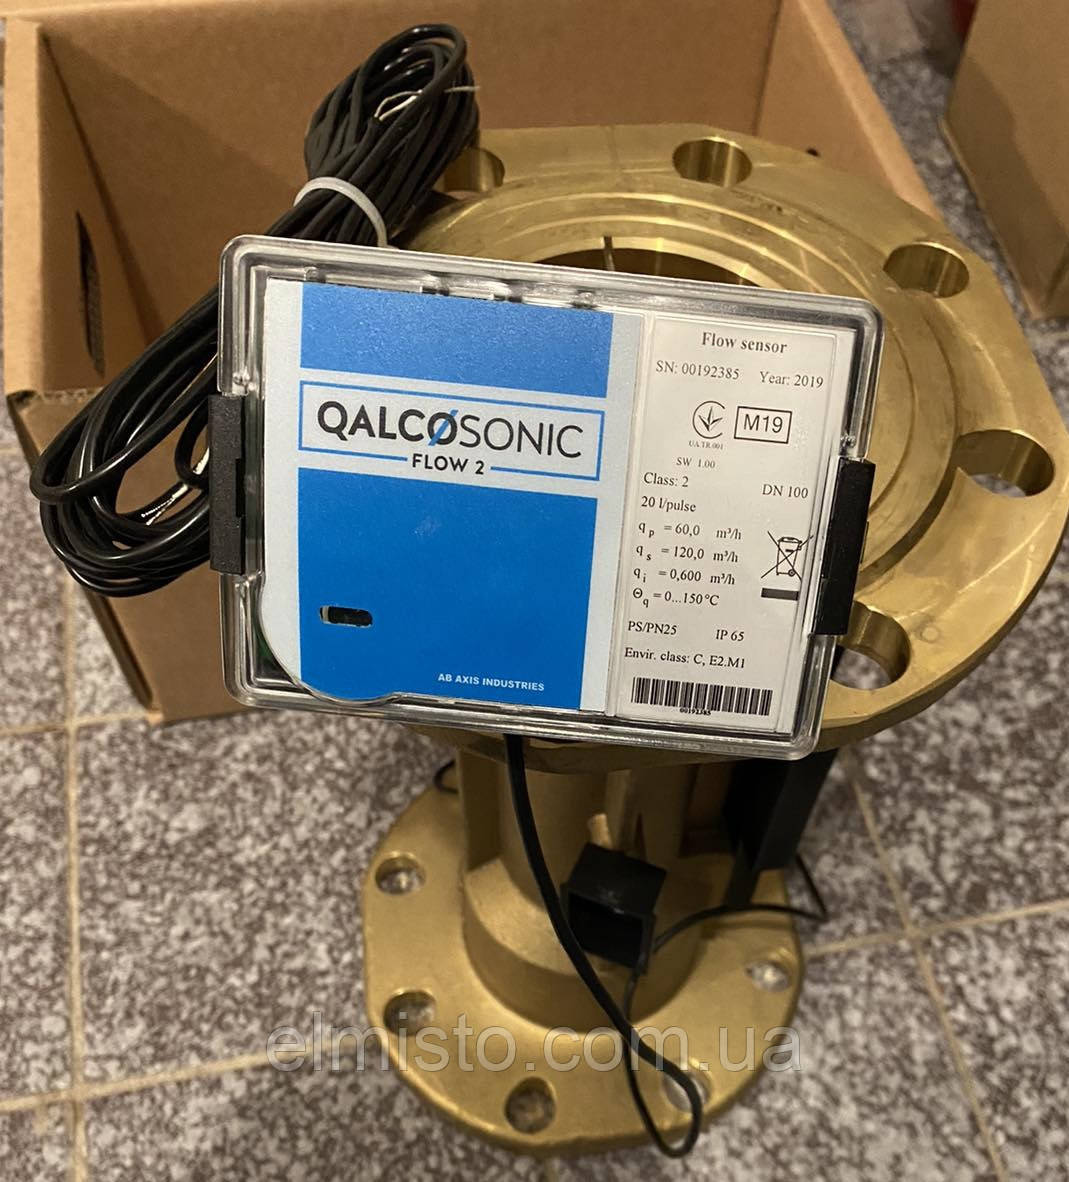 Ультразвуковий фланцовий лічильник води QALCOSONIC FLOW2 100-60 Dn100 Qn60,0